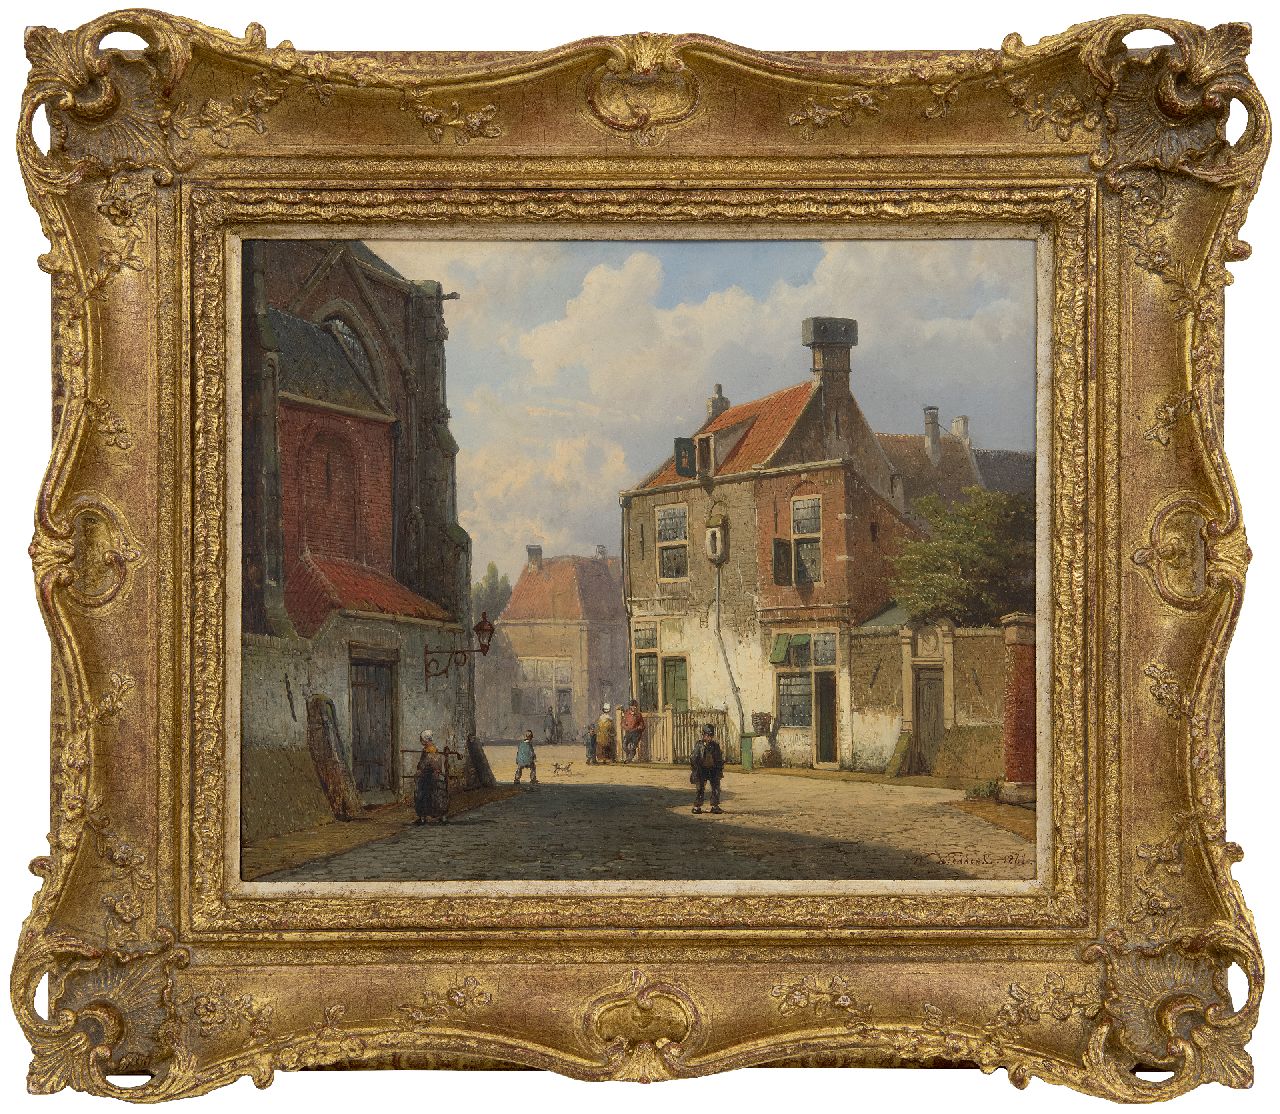 Koekkoek W.  | Willem Koekkoek | Schilderijen te koop aangeboden | Zonnig dorpsstraatje met figuren, olieverf op paneel 28,7 x 35,7 cm, gesigneerd rechtsonder en gedateerd 1861